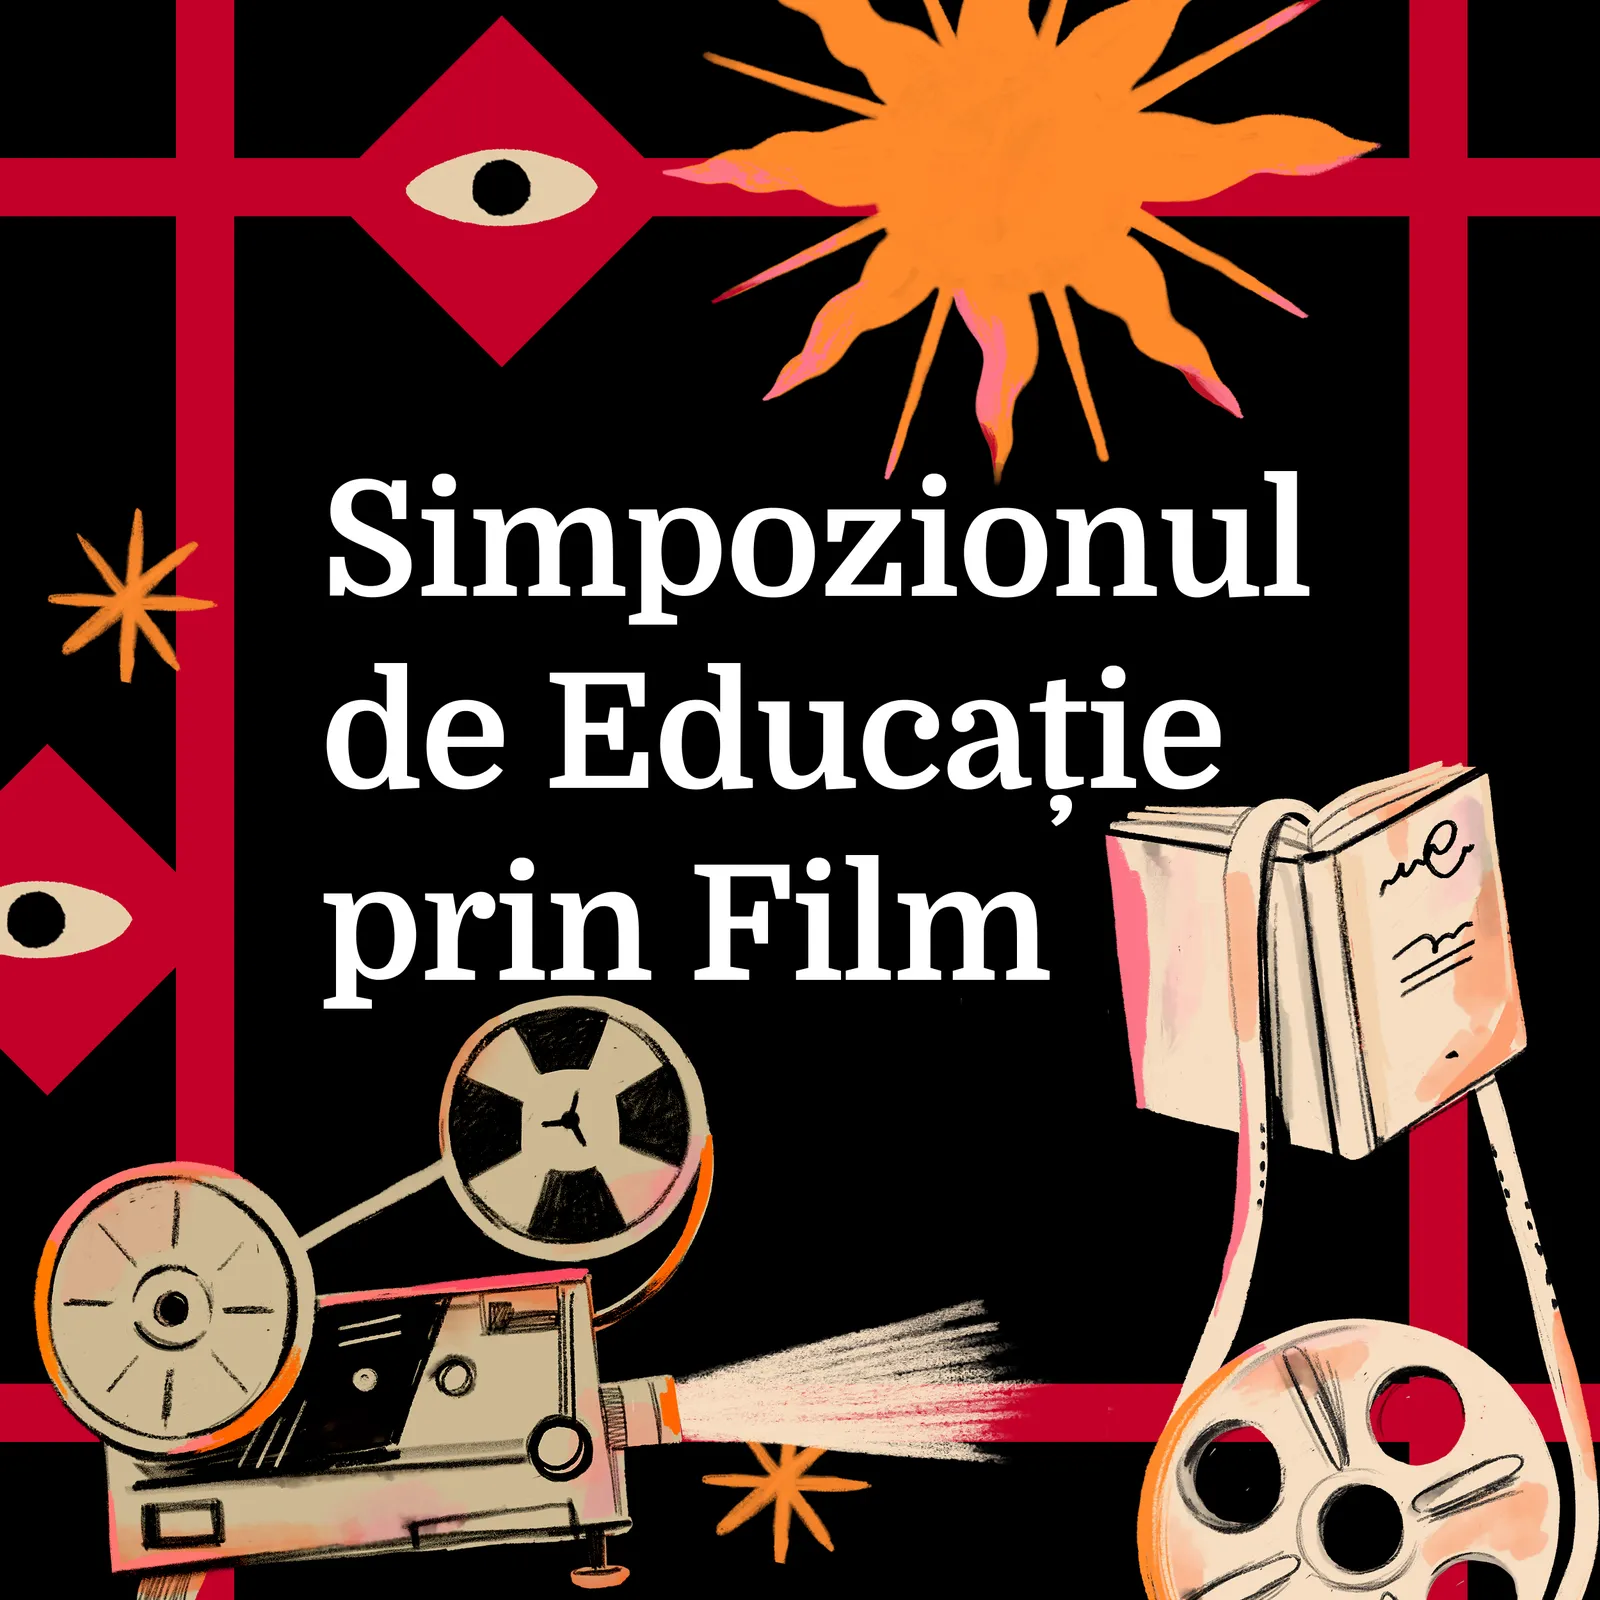 Symposium on education through film | TAIFAS